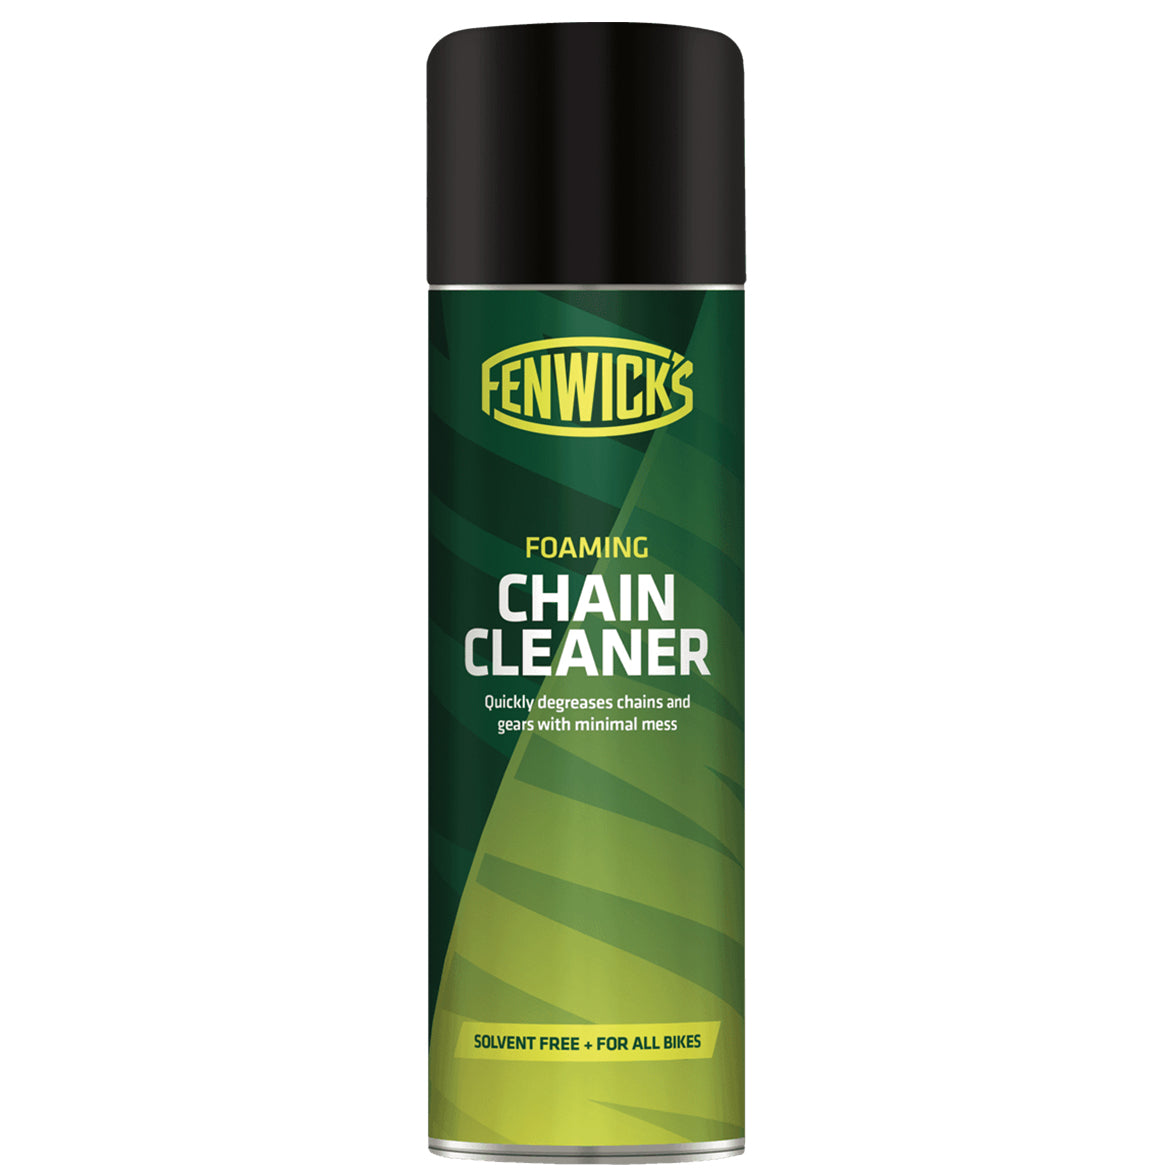 Fenwick's Foaming chain cleaner